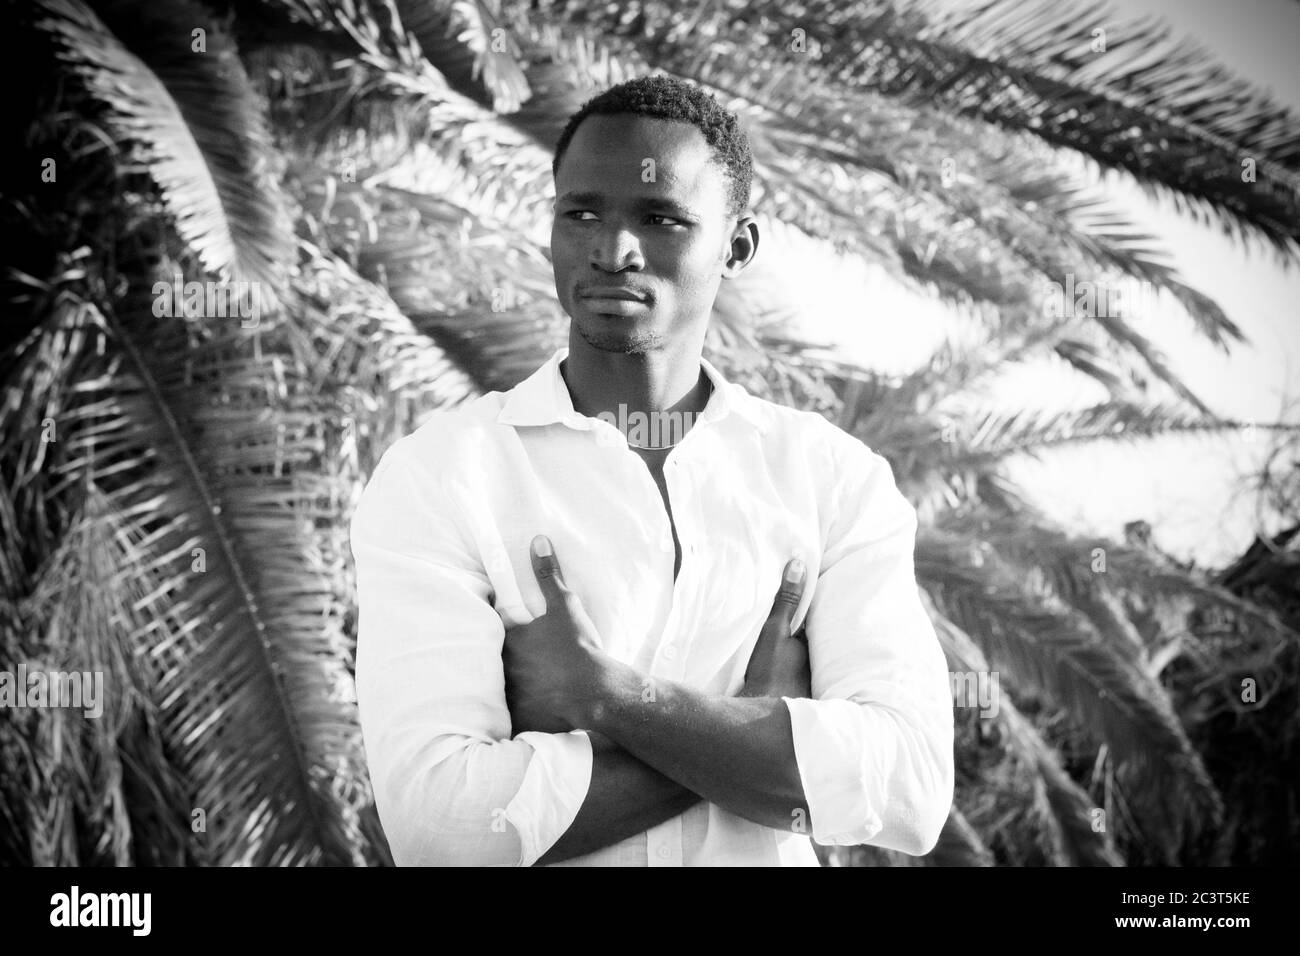 Schwarz schöner junger Mann Modell Portrait Stand und Look mit tropicalc Palme in Background - junge Menschen in schwarz und weiß Stockfoto